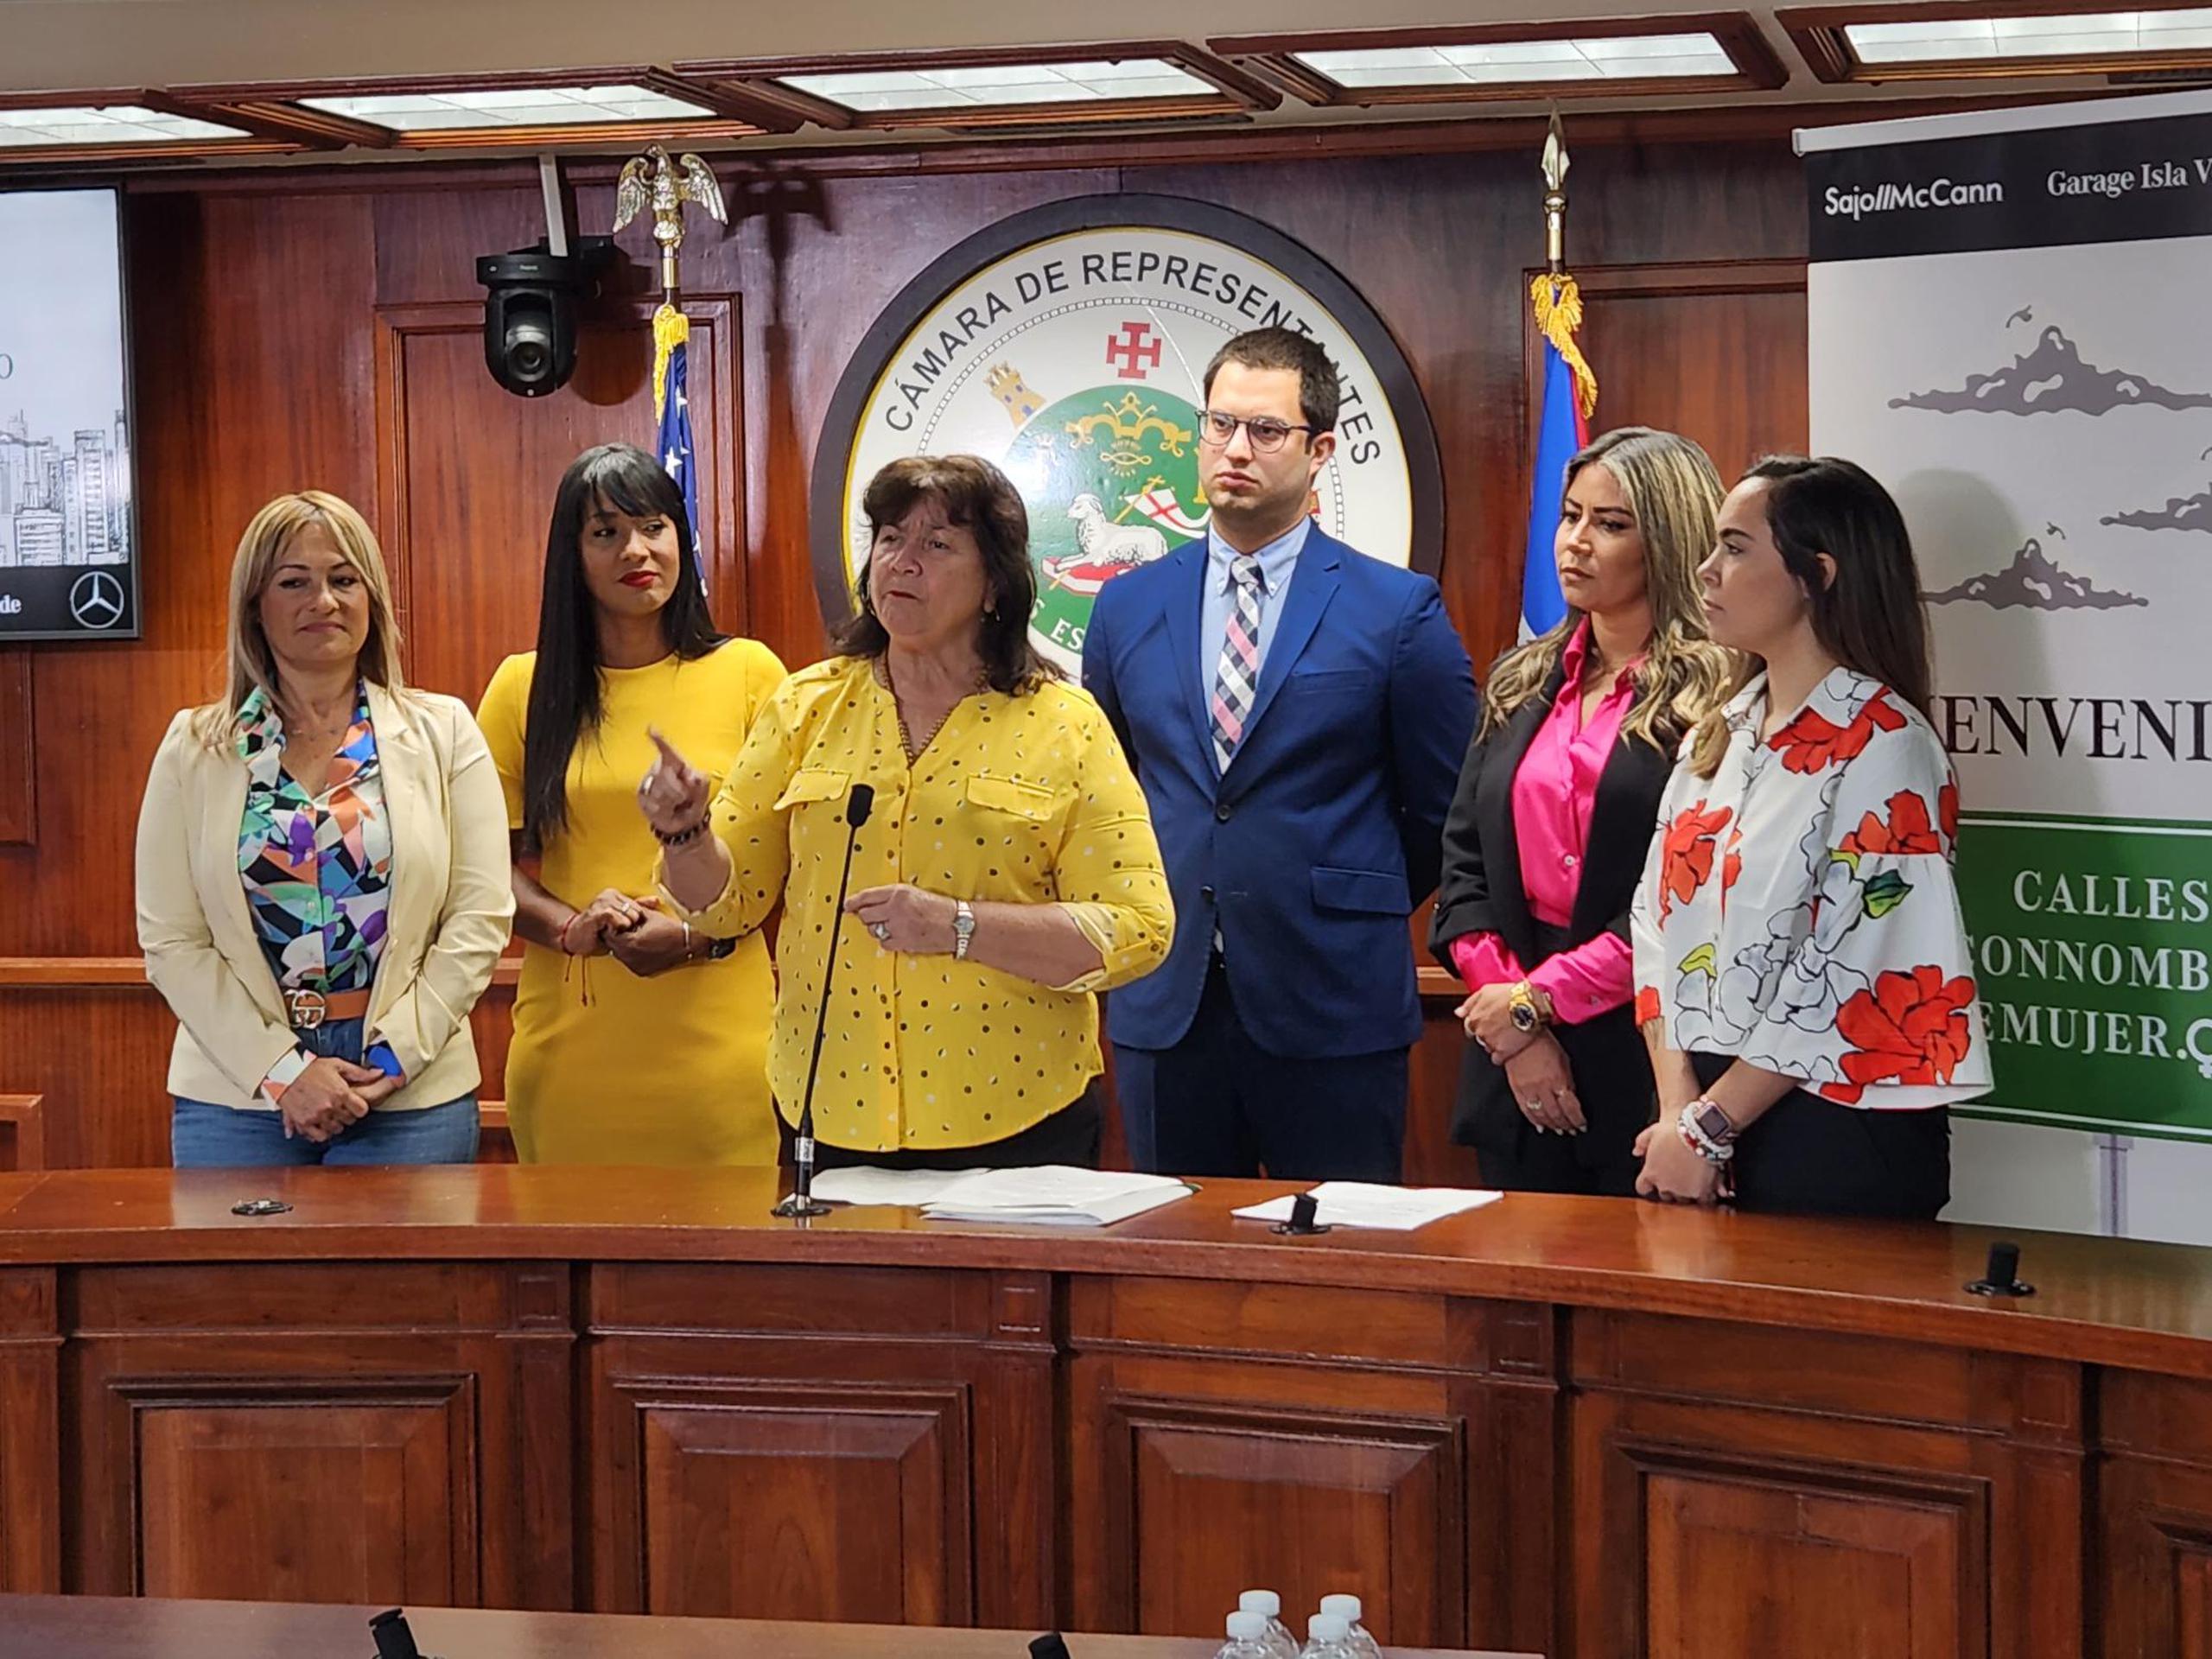 La representante Lydia Méndez elogió la medida que promueve la igualdad al buscar poner más nombres de mujeres destacadas en vías y edificios públicos.